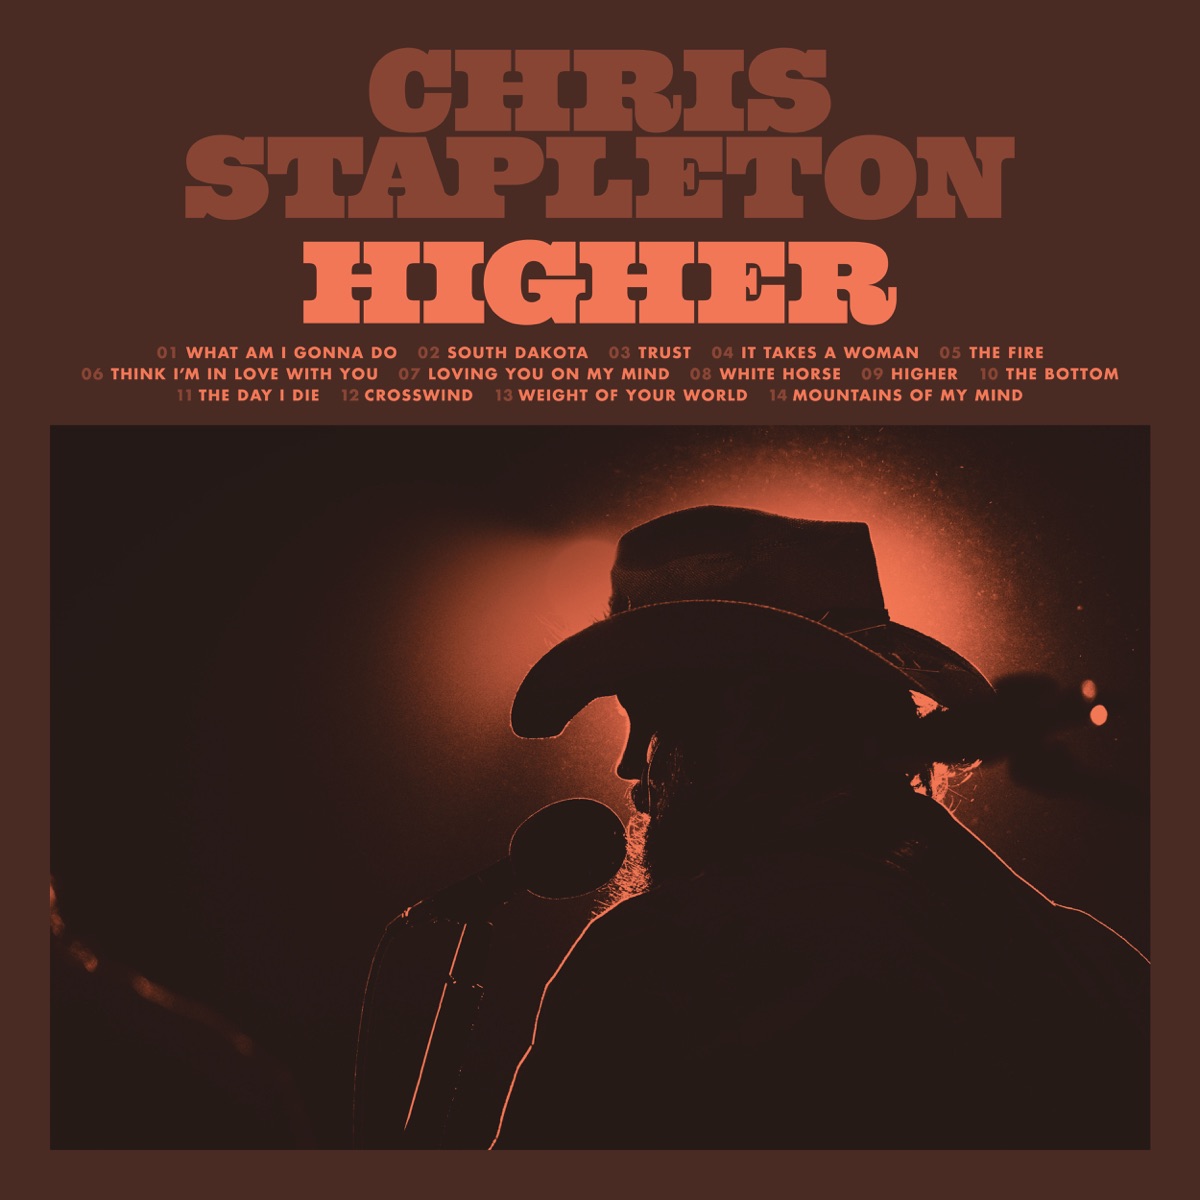 Higher - Album by Chris Stapleton - Apple Music